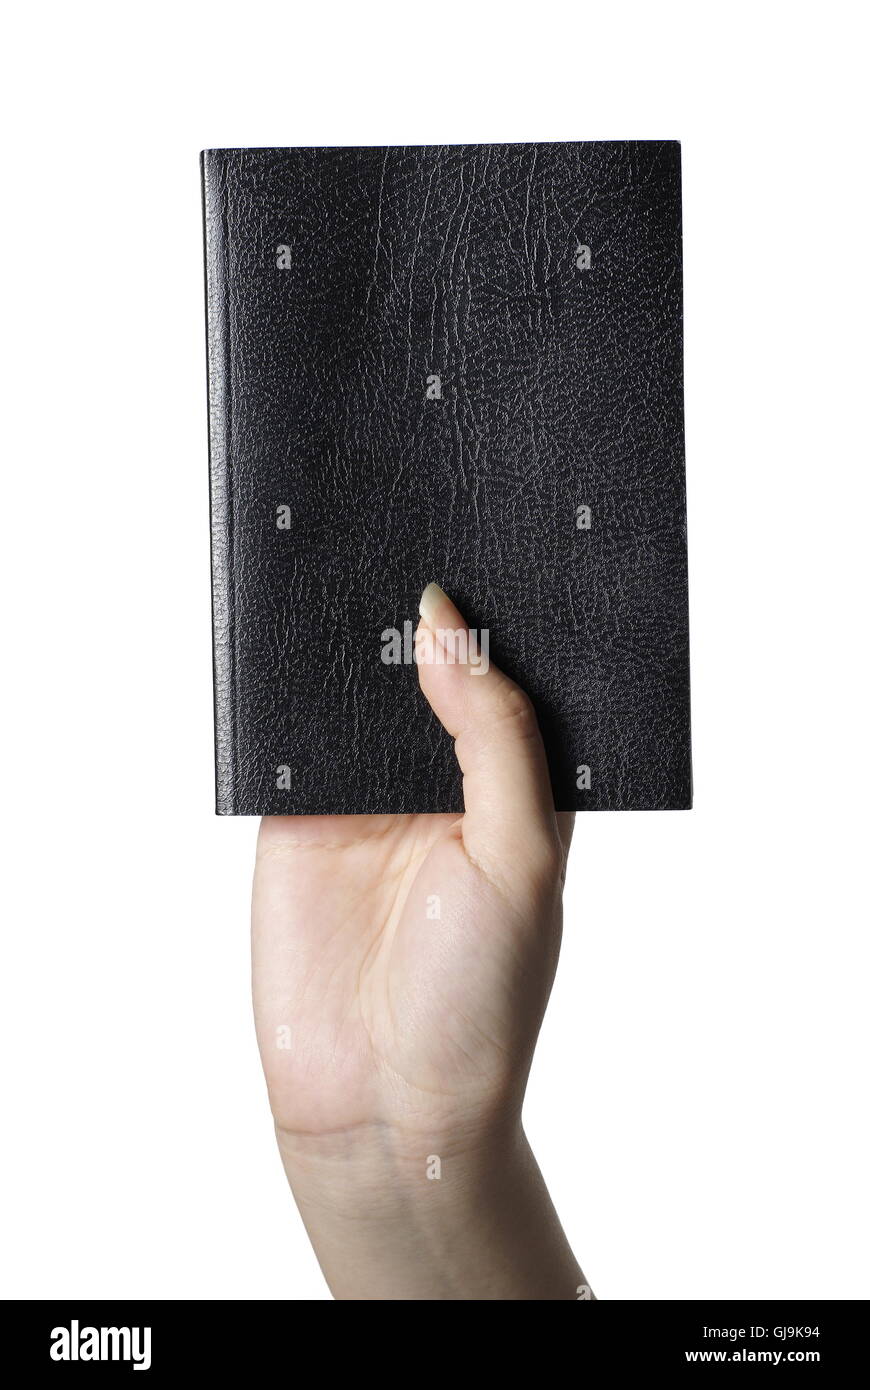 Bible Black book en main femelle avec fond blanc Banque D'Images